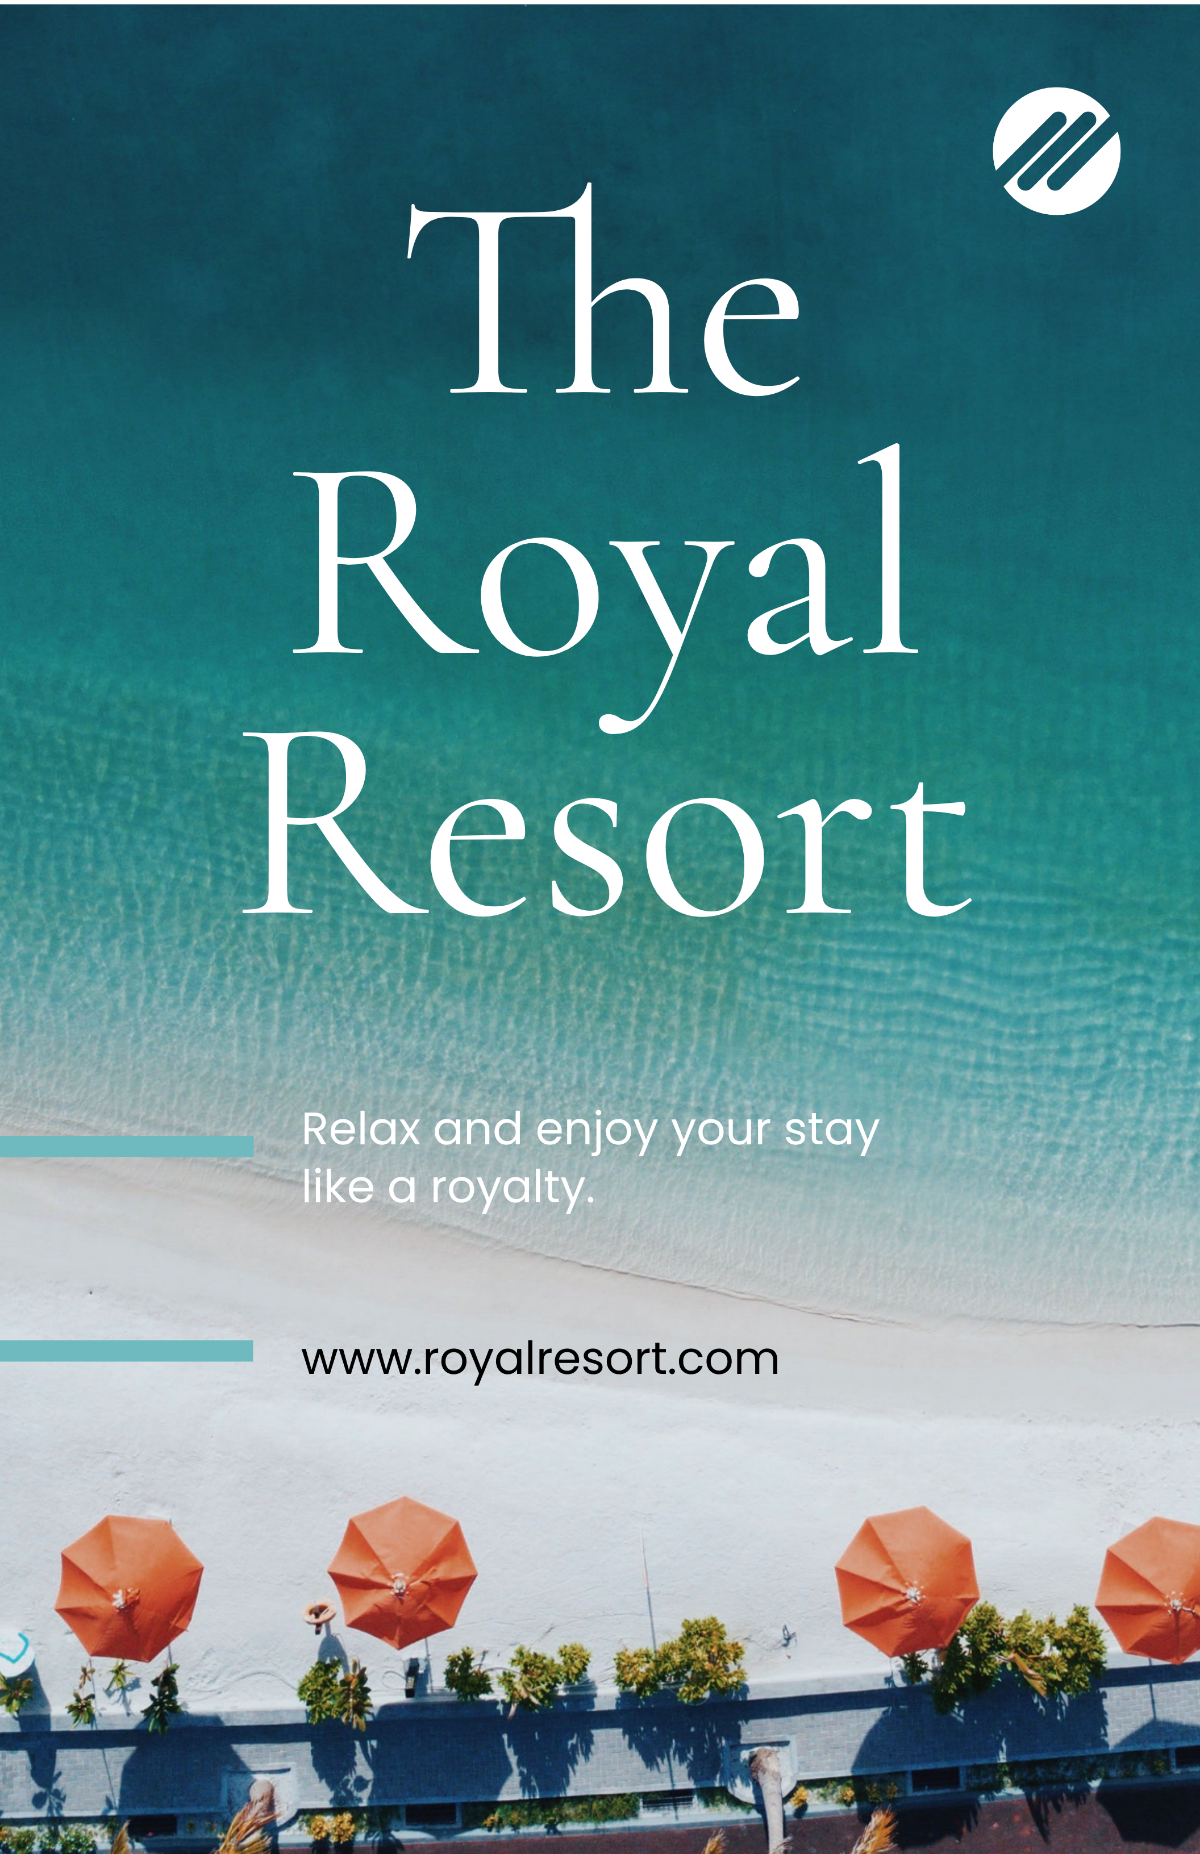 Royal Resort Poster Template